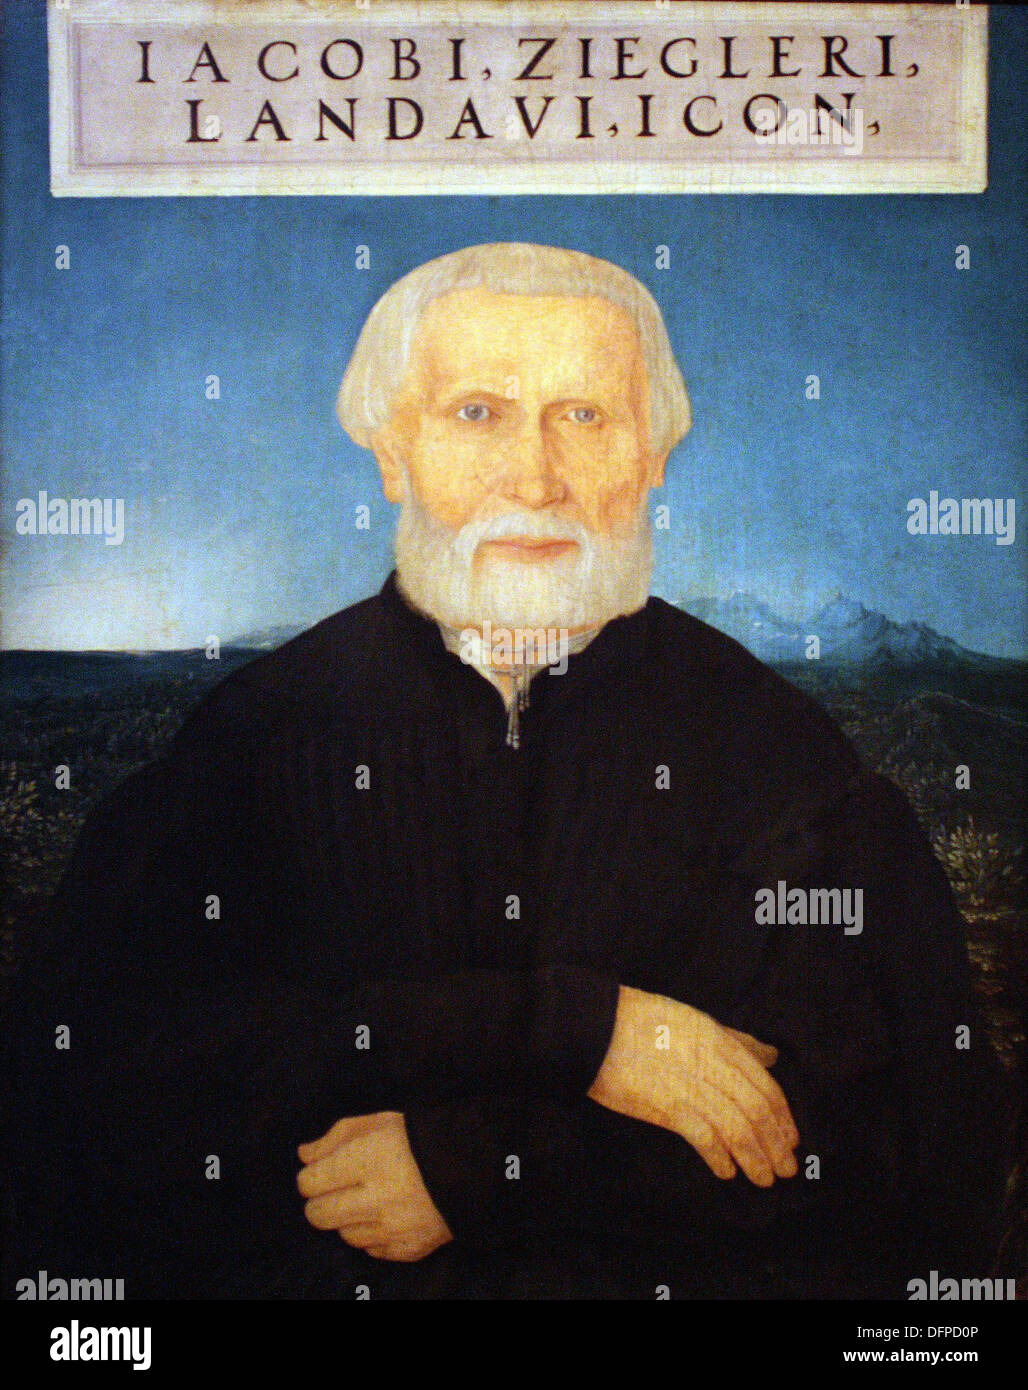 Wolf HUBER - Der Humanist Jacob Ziegler - 1549 - Kunsthistoriches Museum - Vienna Stock Photo